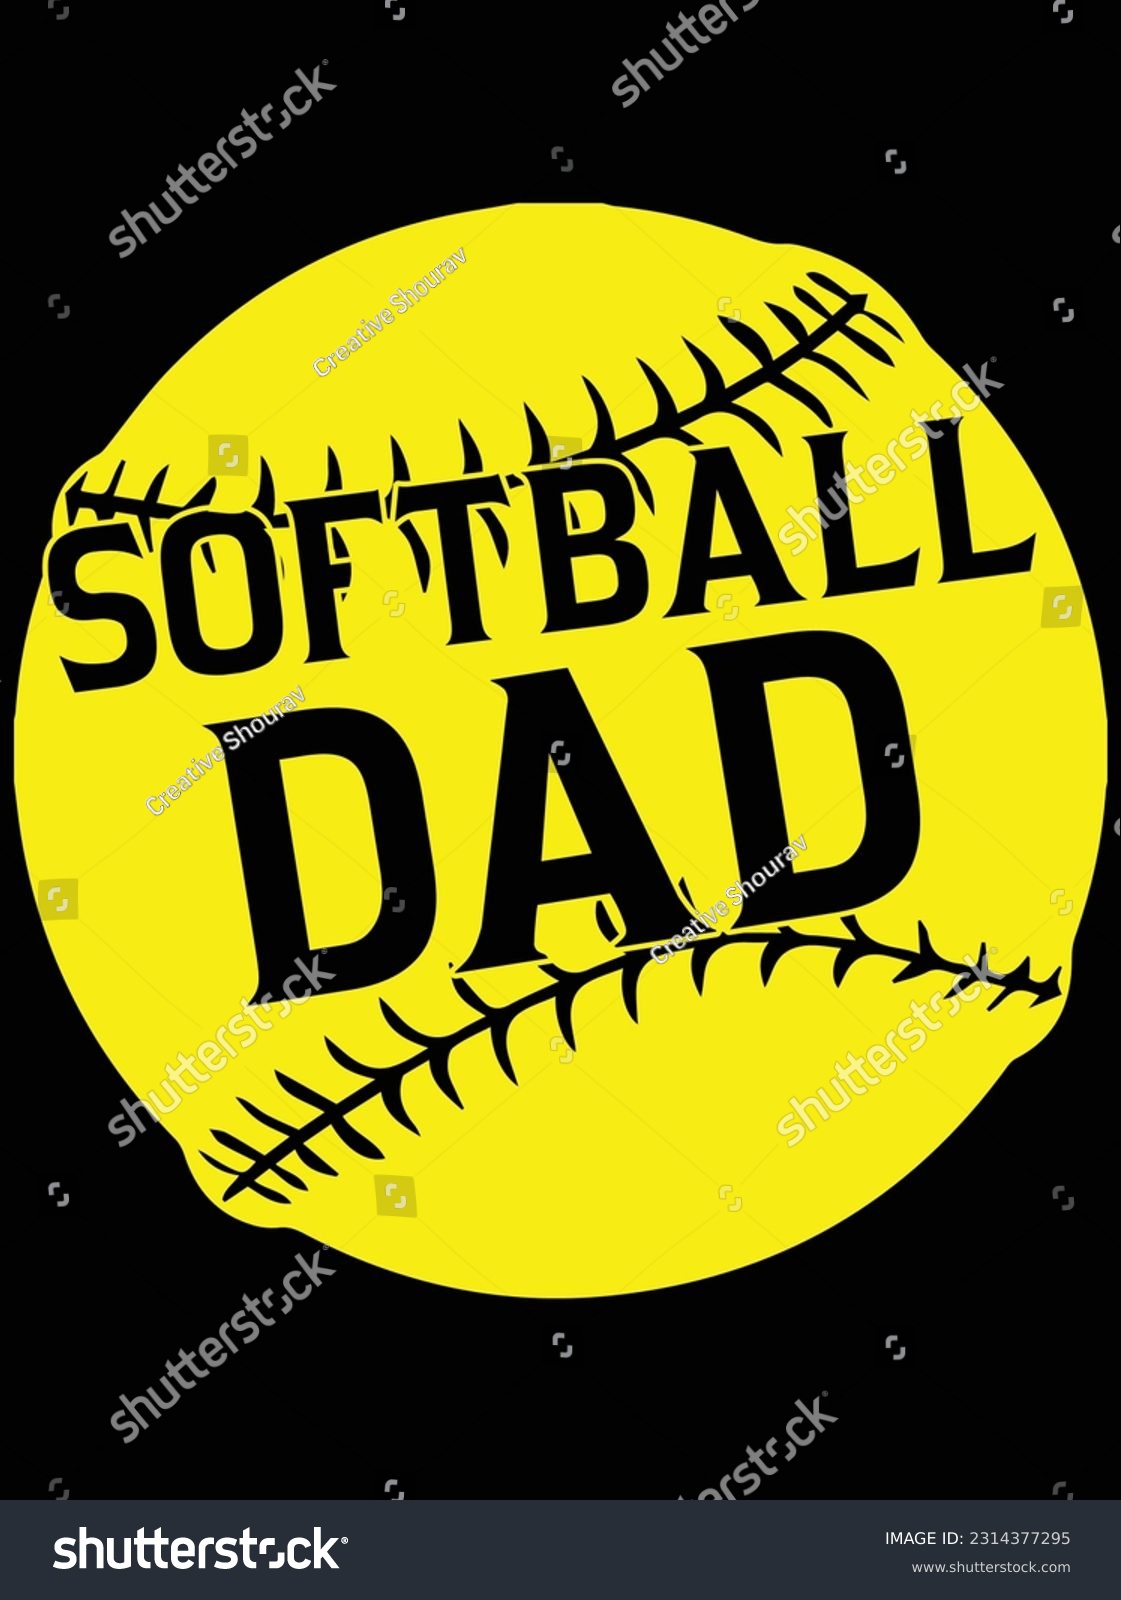 SVG of Softball dad art vector art design, eps file. design file for t-shirt. SVG, EPS cuttable design file svg